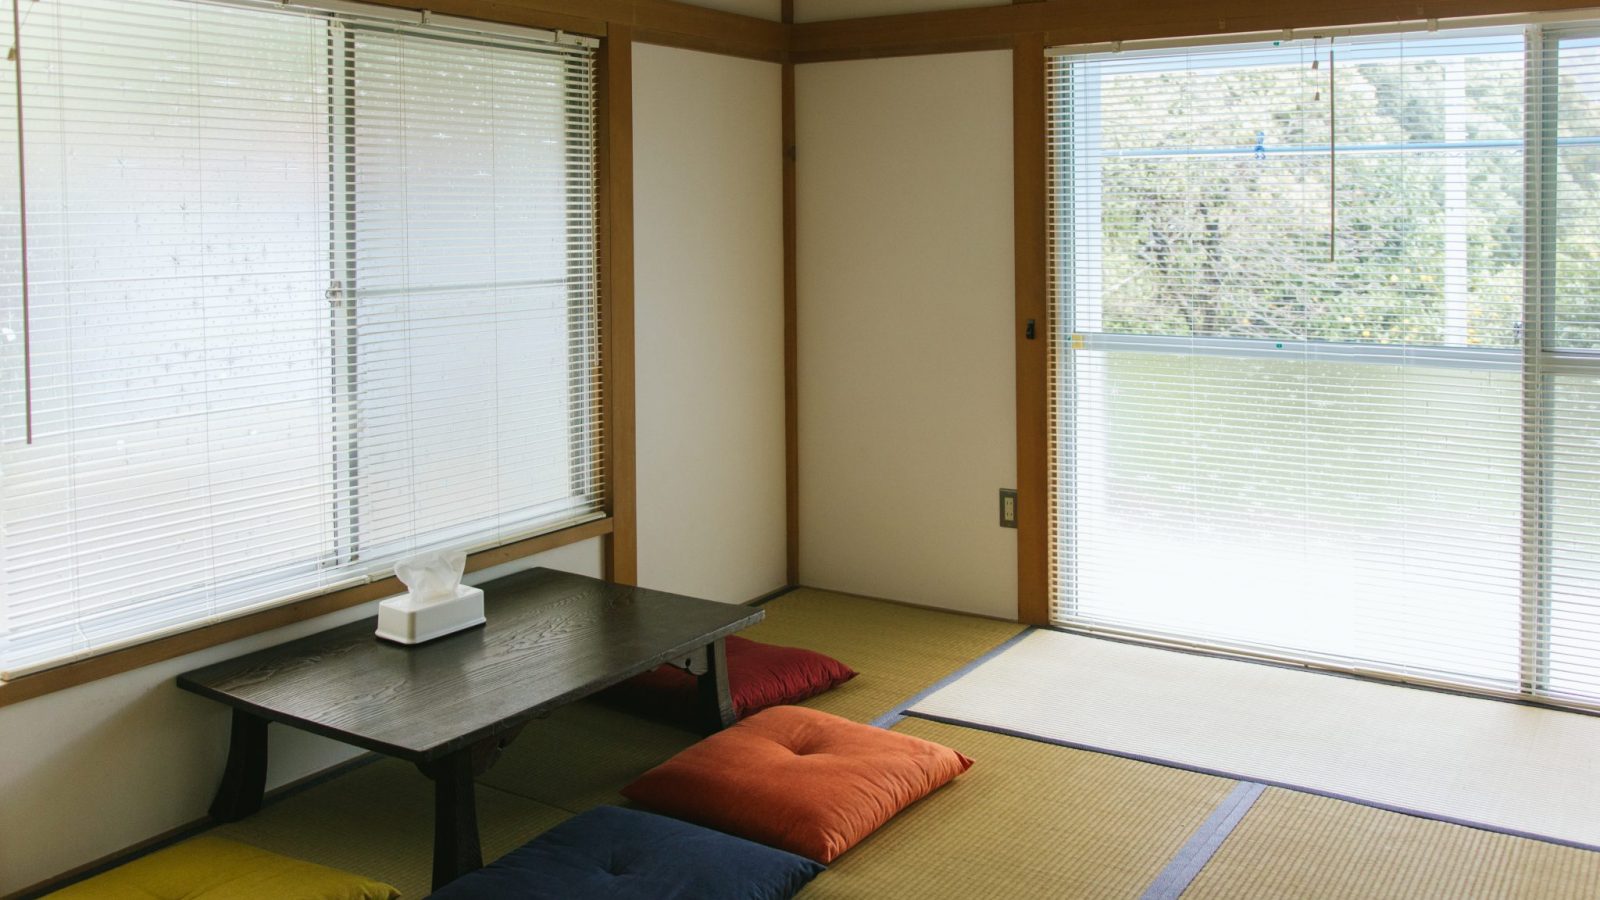 Japanese living room at coya cottage rental house shimoda